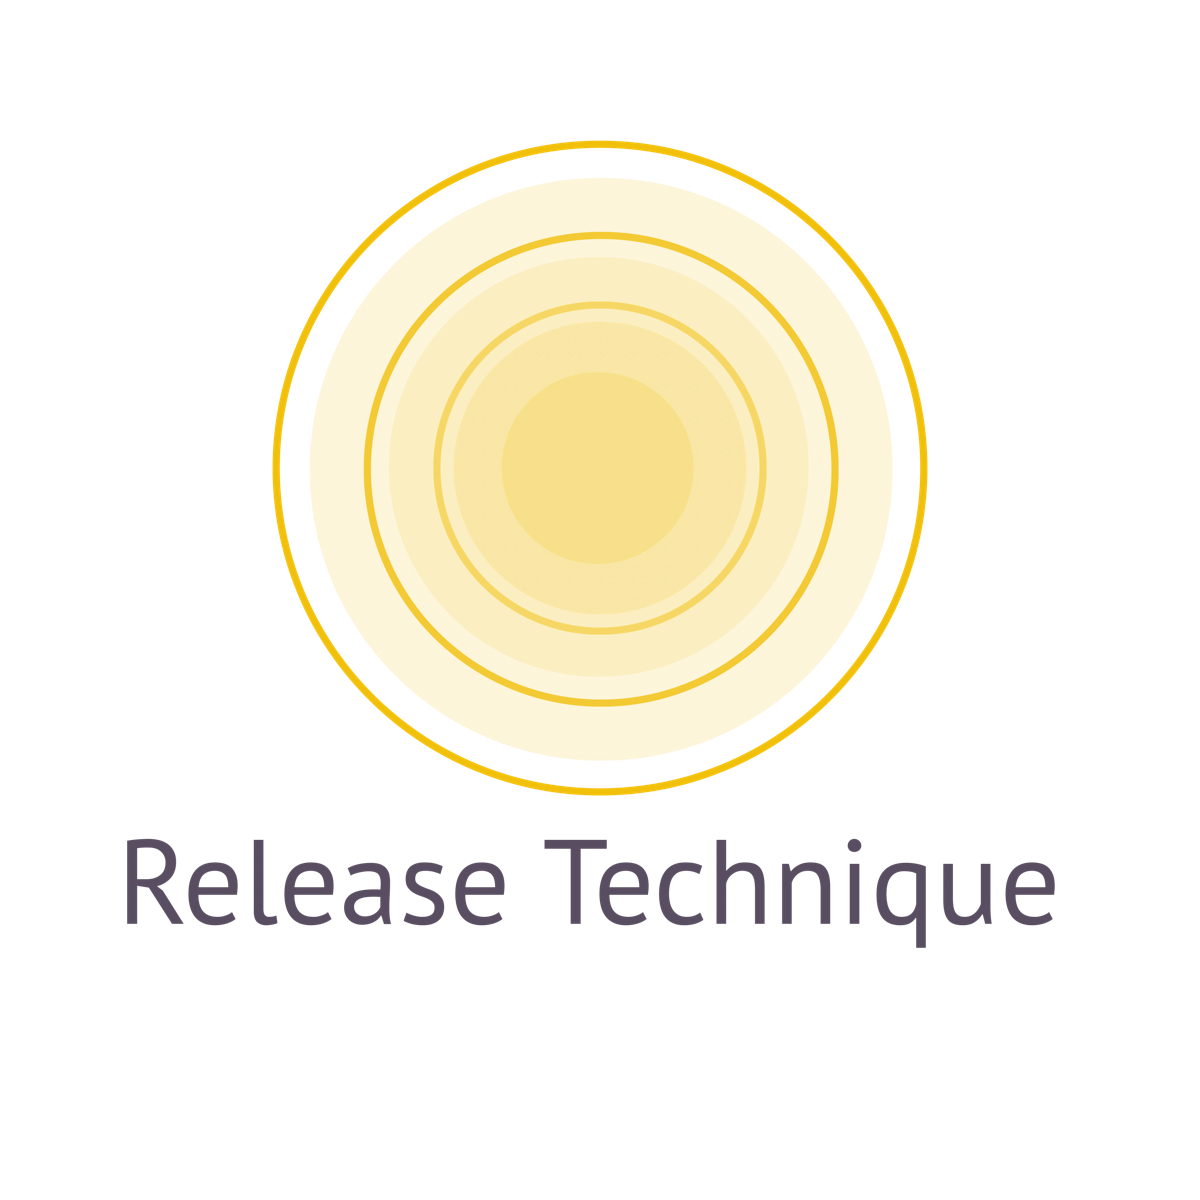 Release Technique